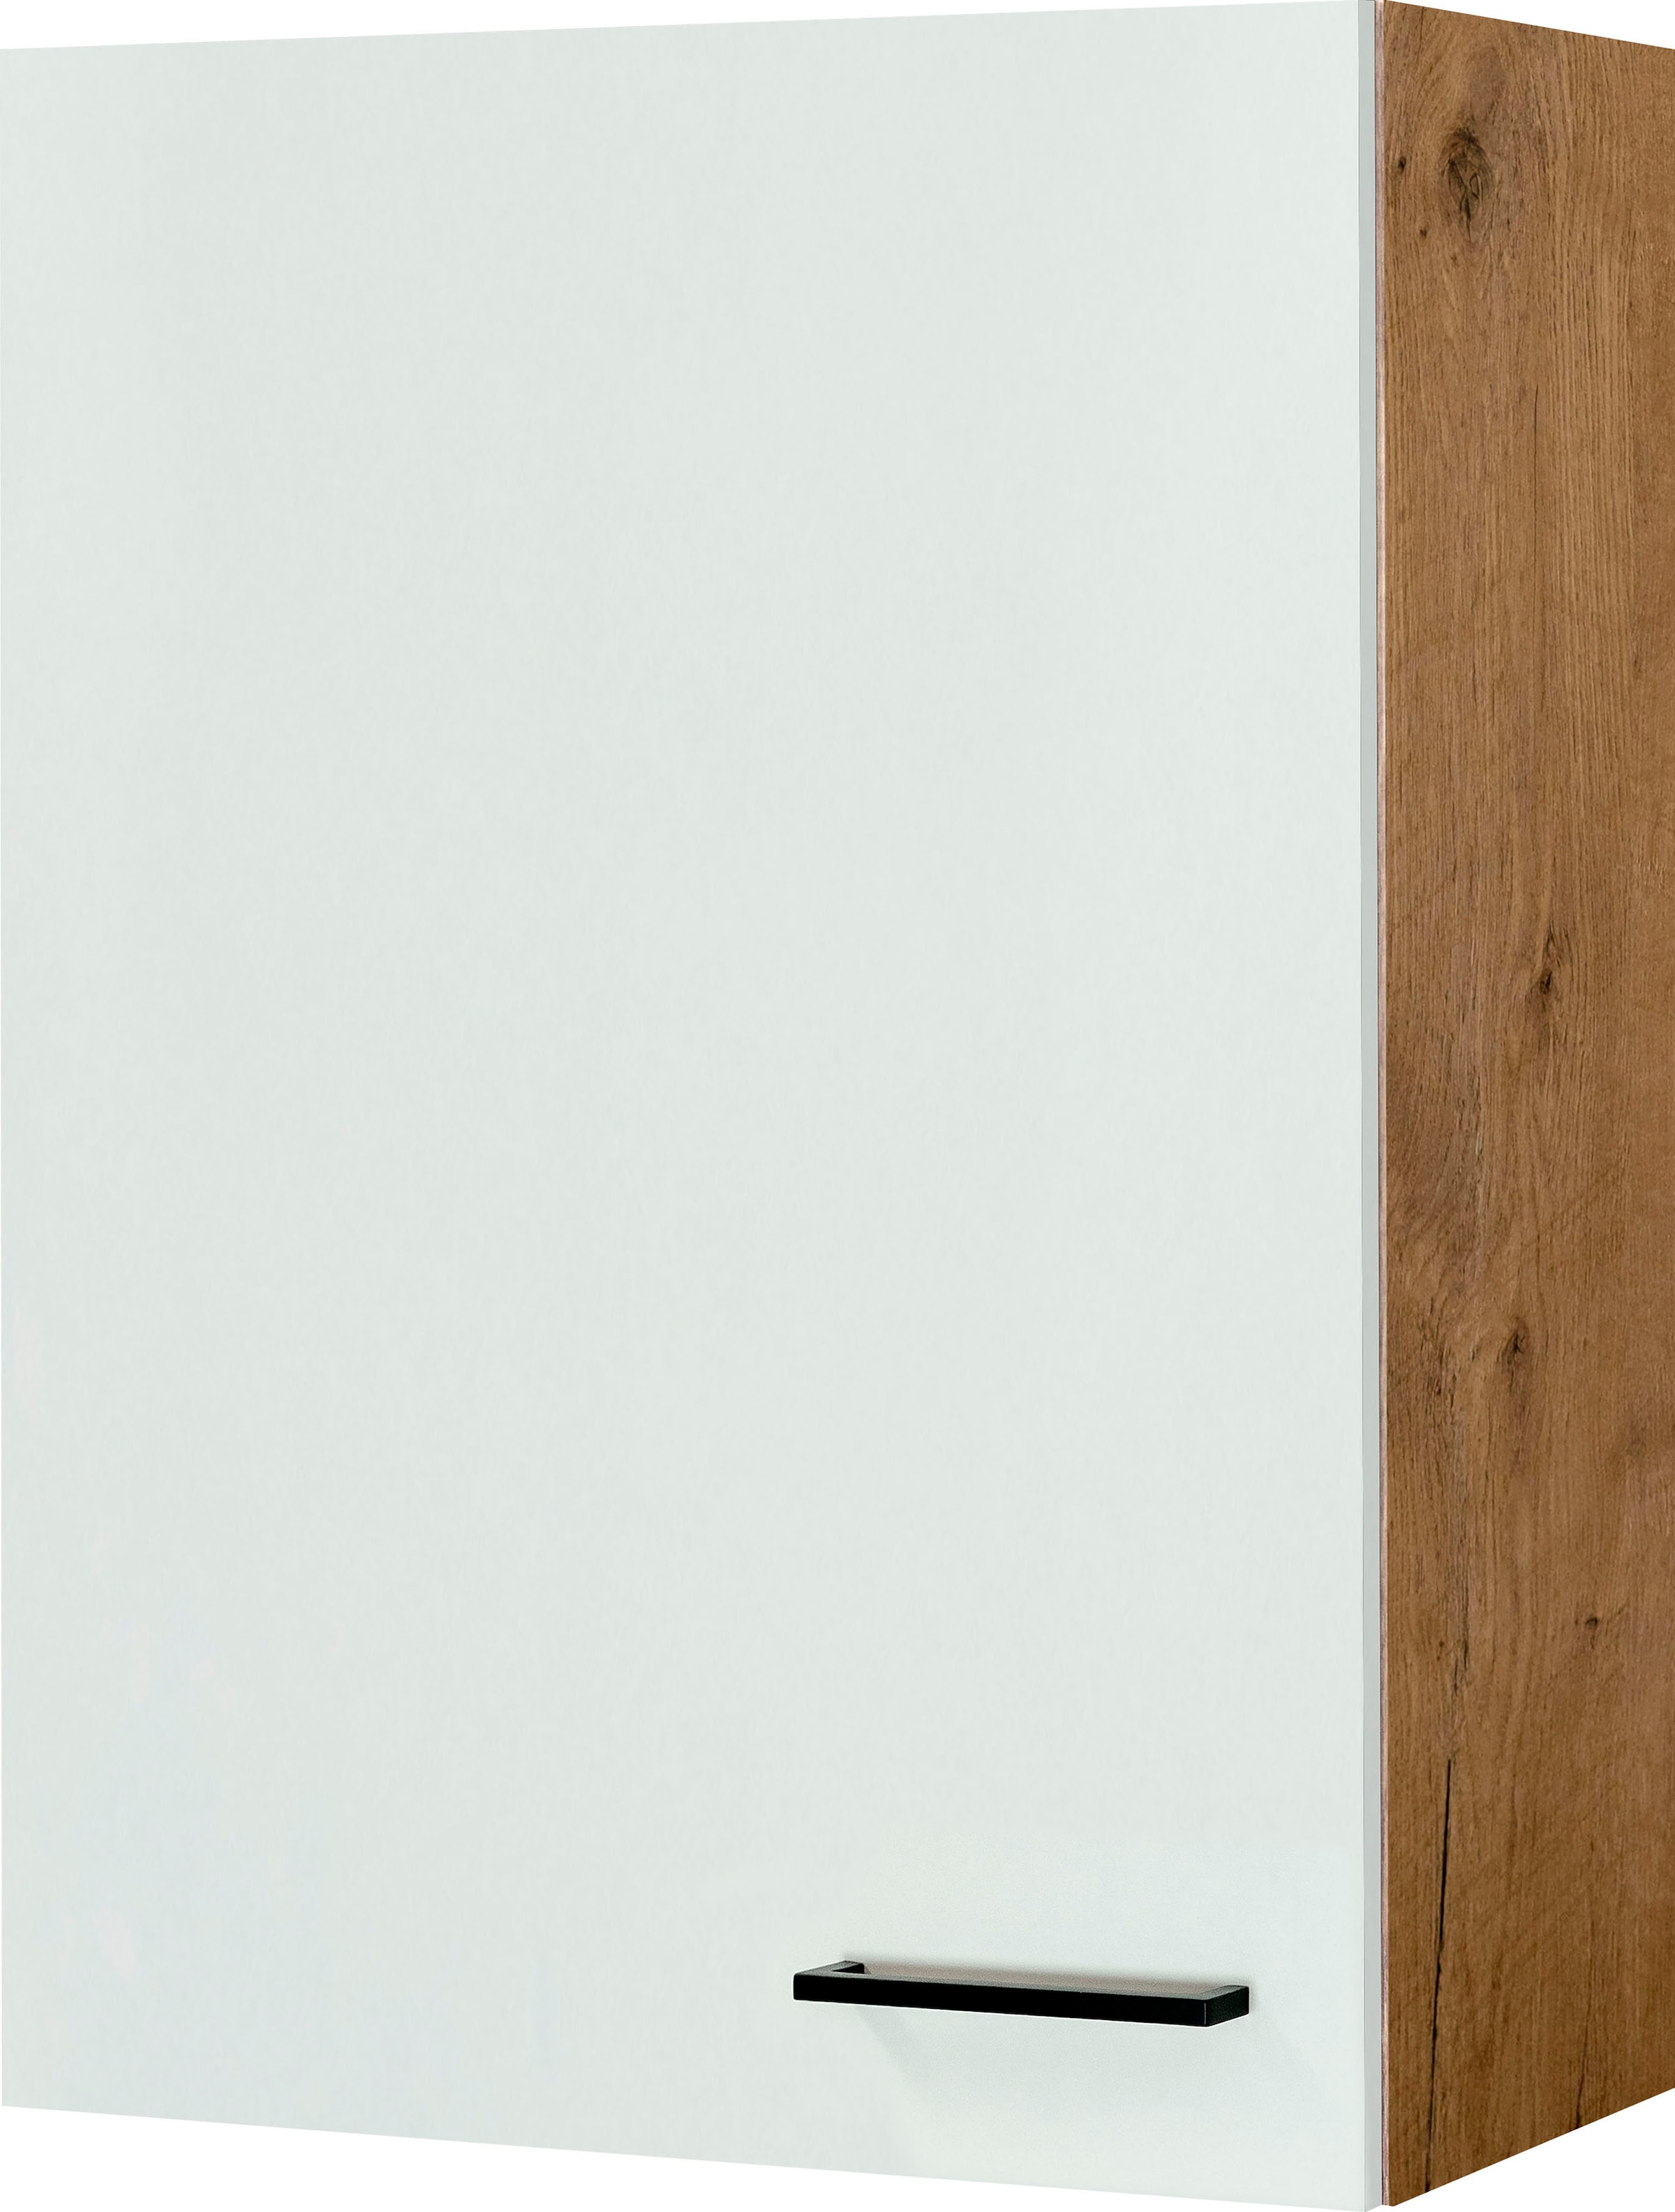 Flex-Well Hängeschrank "Vintea", (B x H x T) 60 x 89 x 32 cm, für viel Stauraum